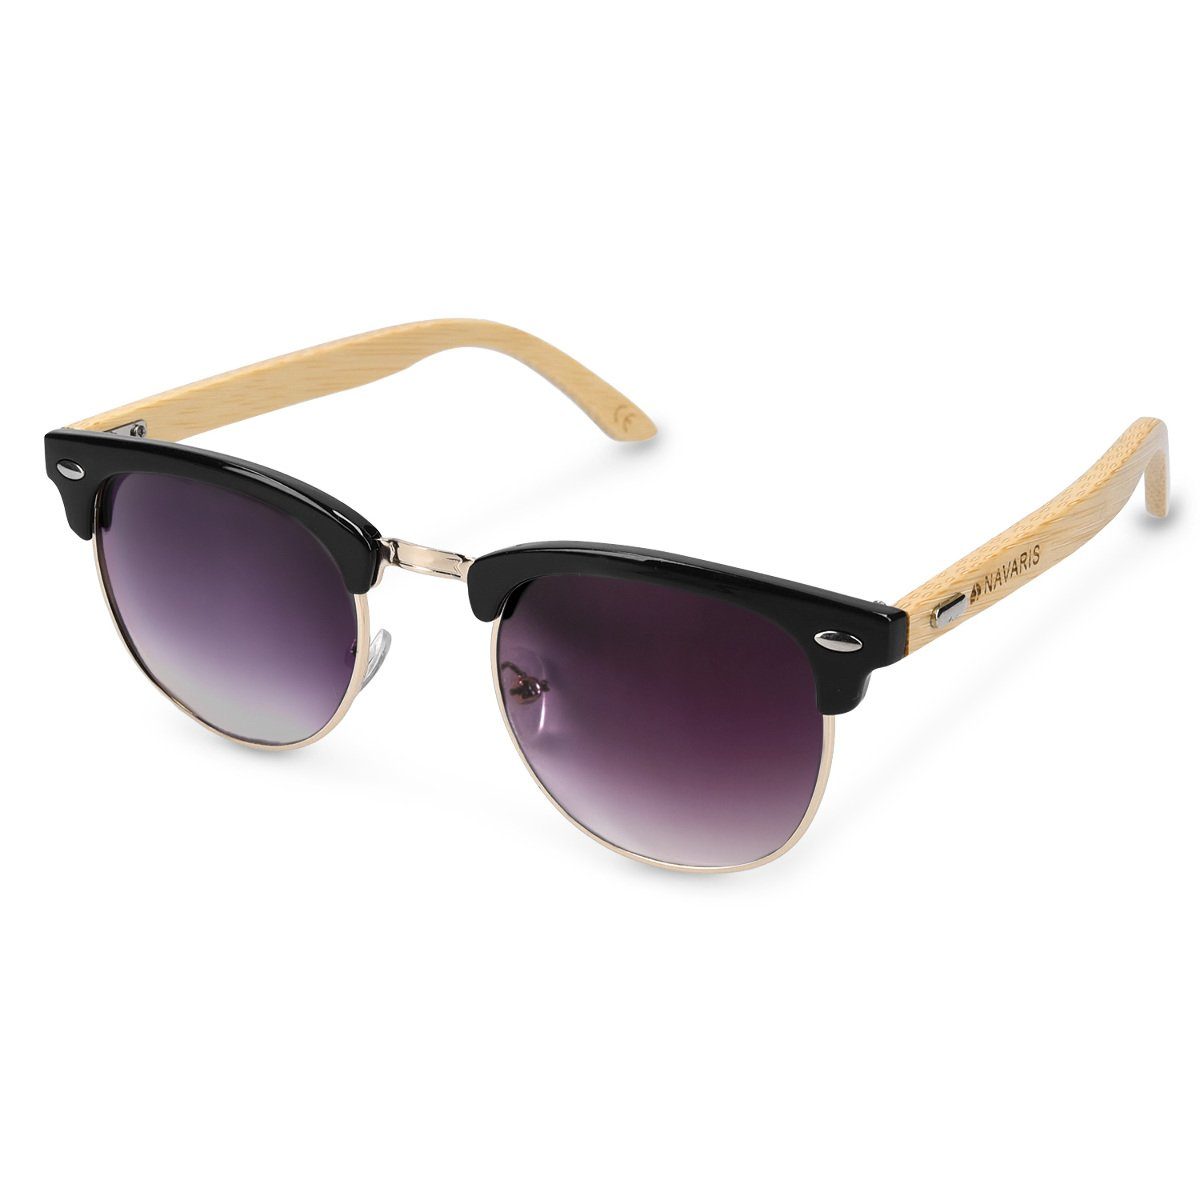 Stilvolle Sonnenbrille Herren Damen Brille Sonnenbrillen UV400 Protection AU016 